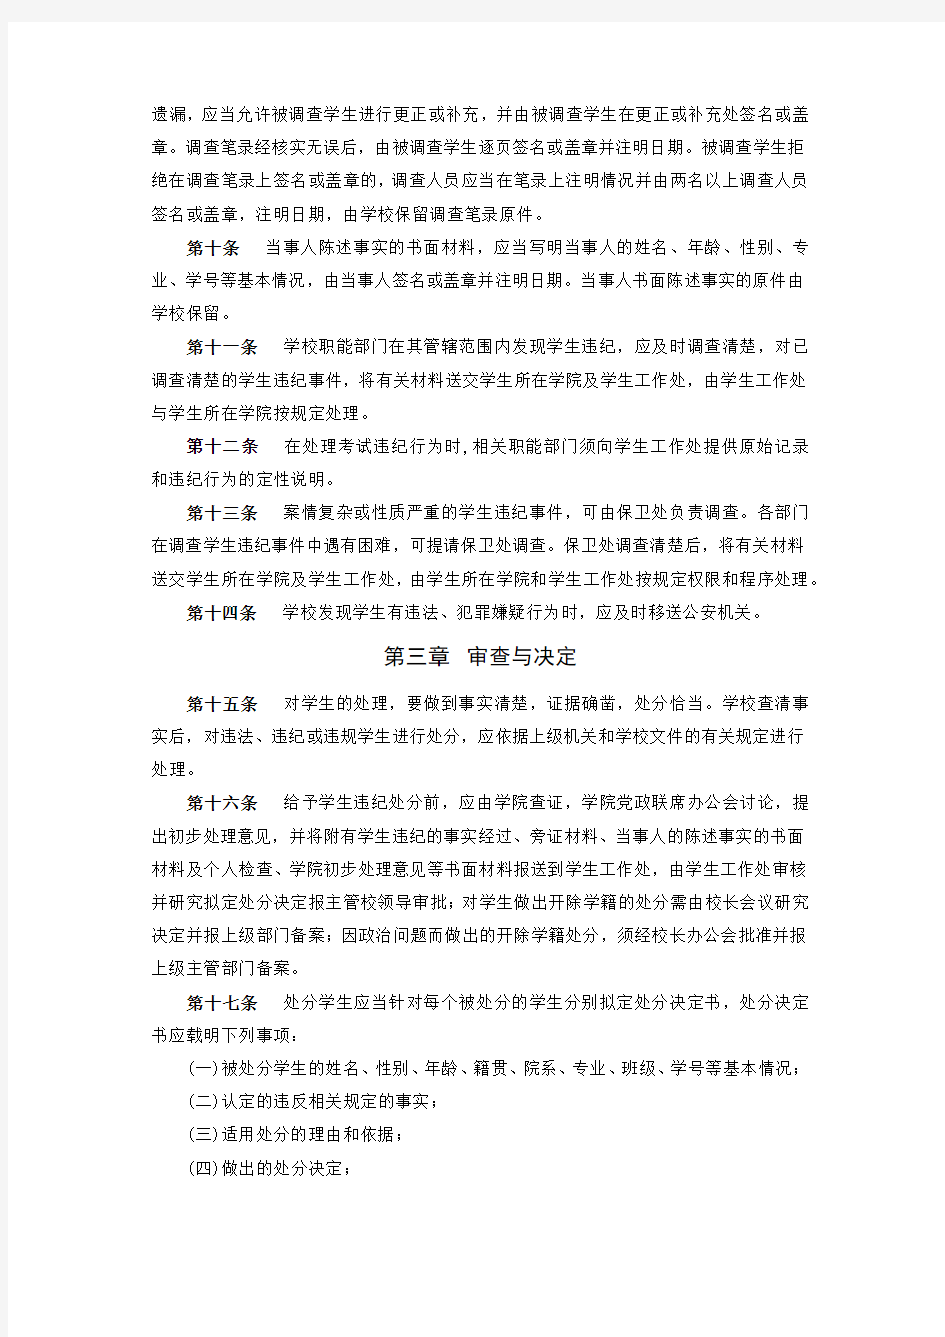 中国石油大学(北京) 学生违纪处理办法